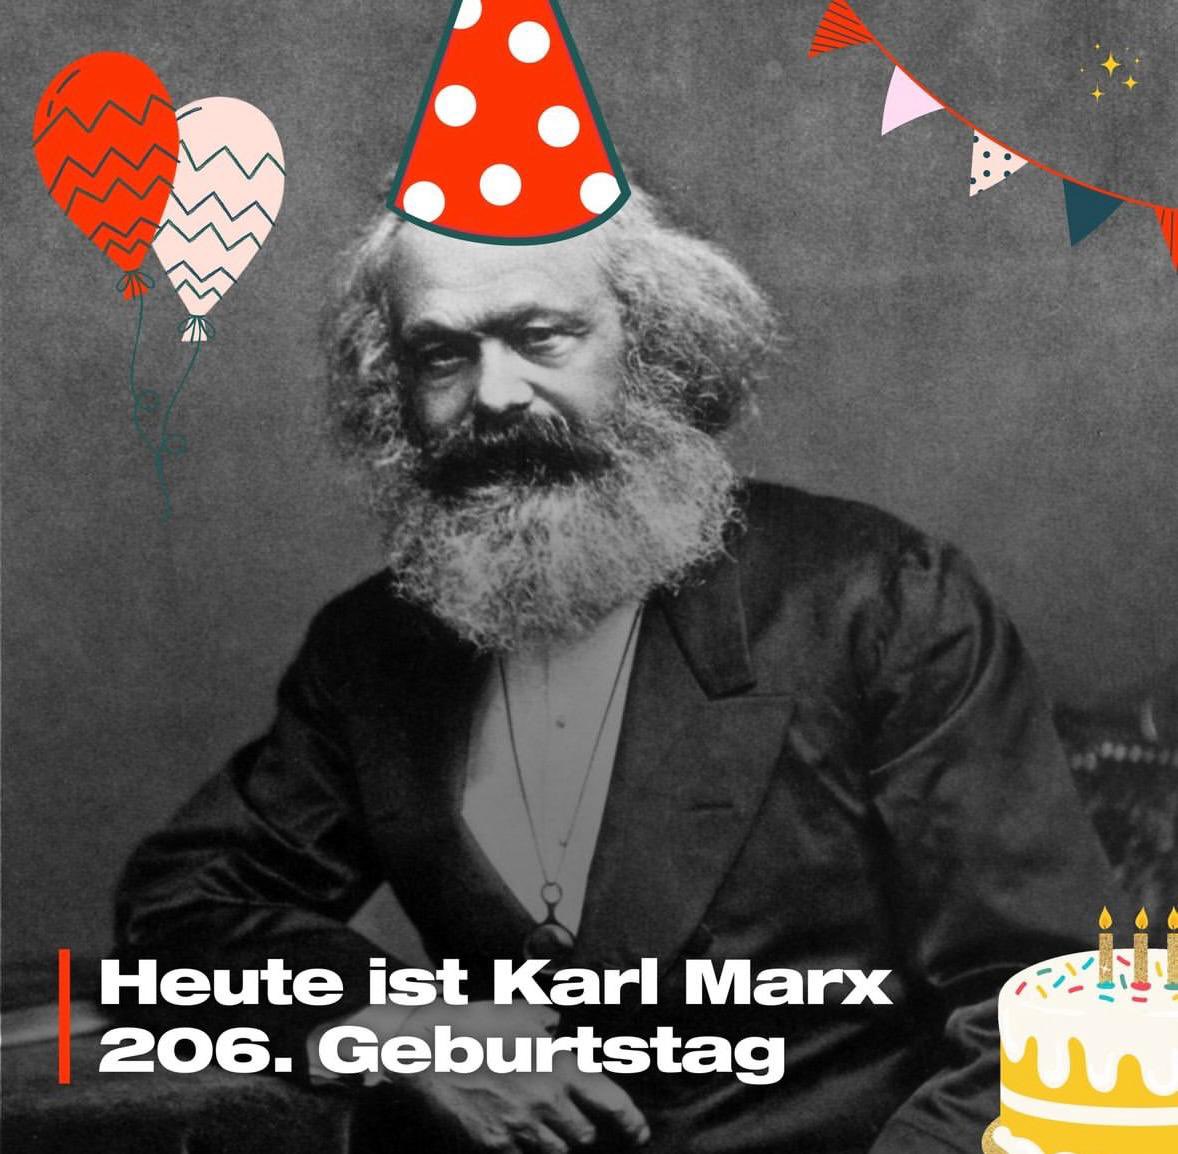 Ich feiere Karl Marx' Geburtstag nicht. Mit dem Todestag kann ich mich schon eher anfreunden.